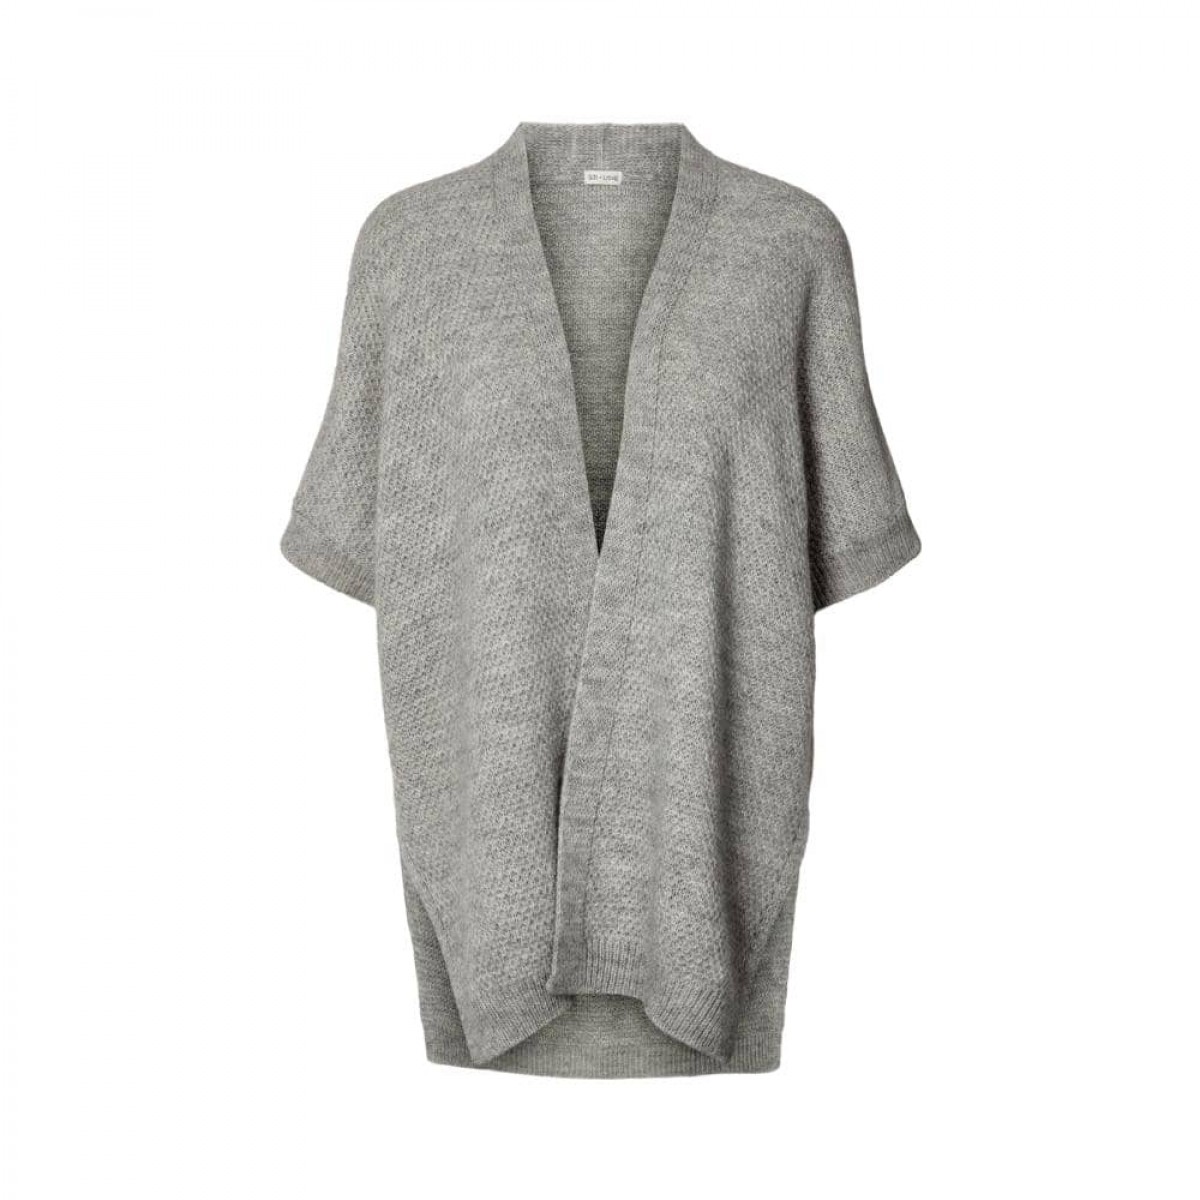 irma knit vest - grey melange - front